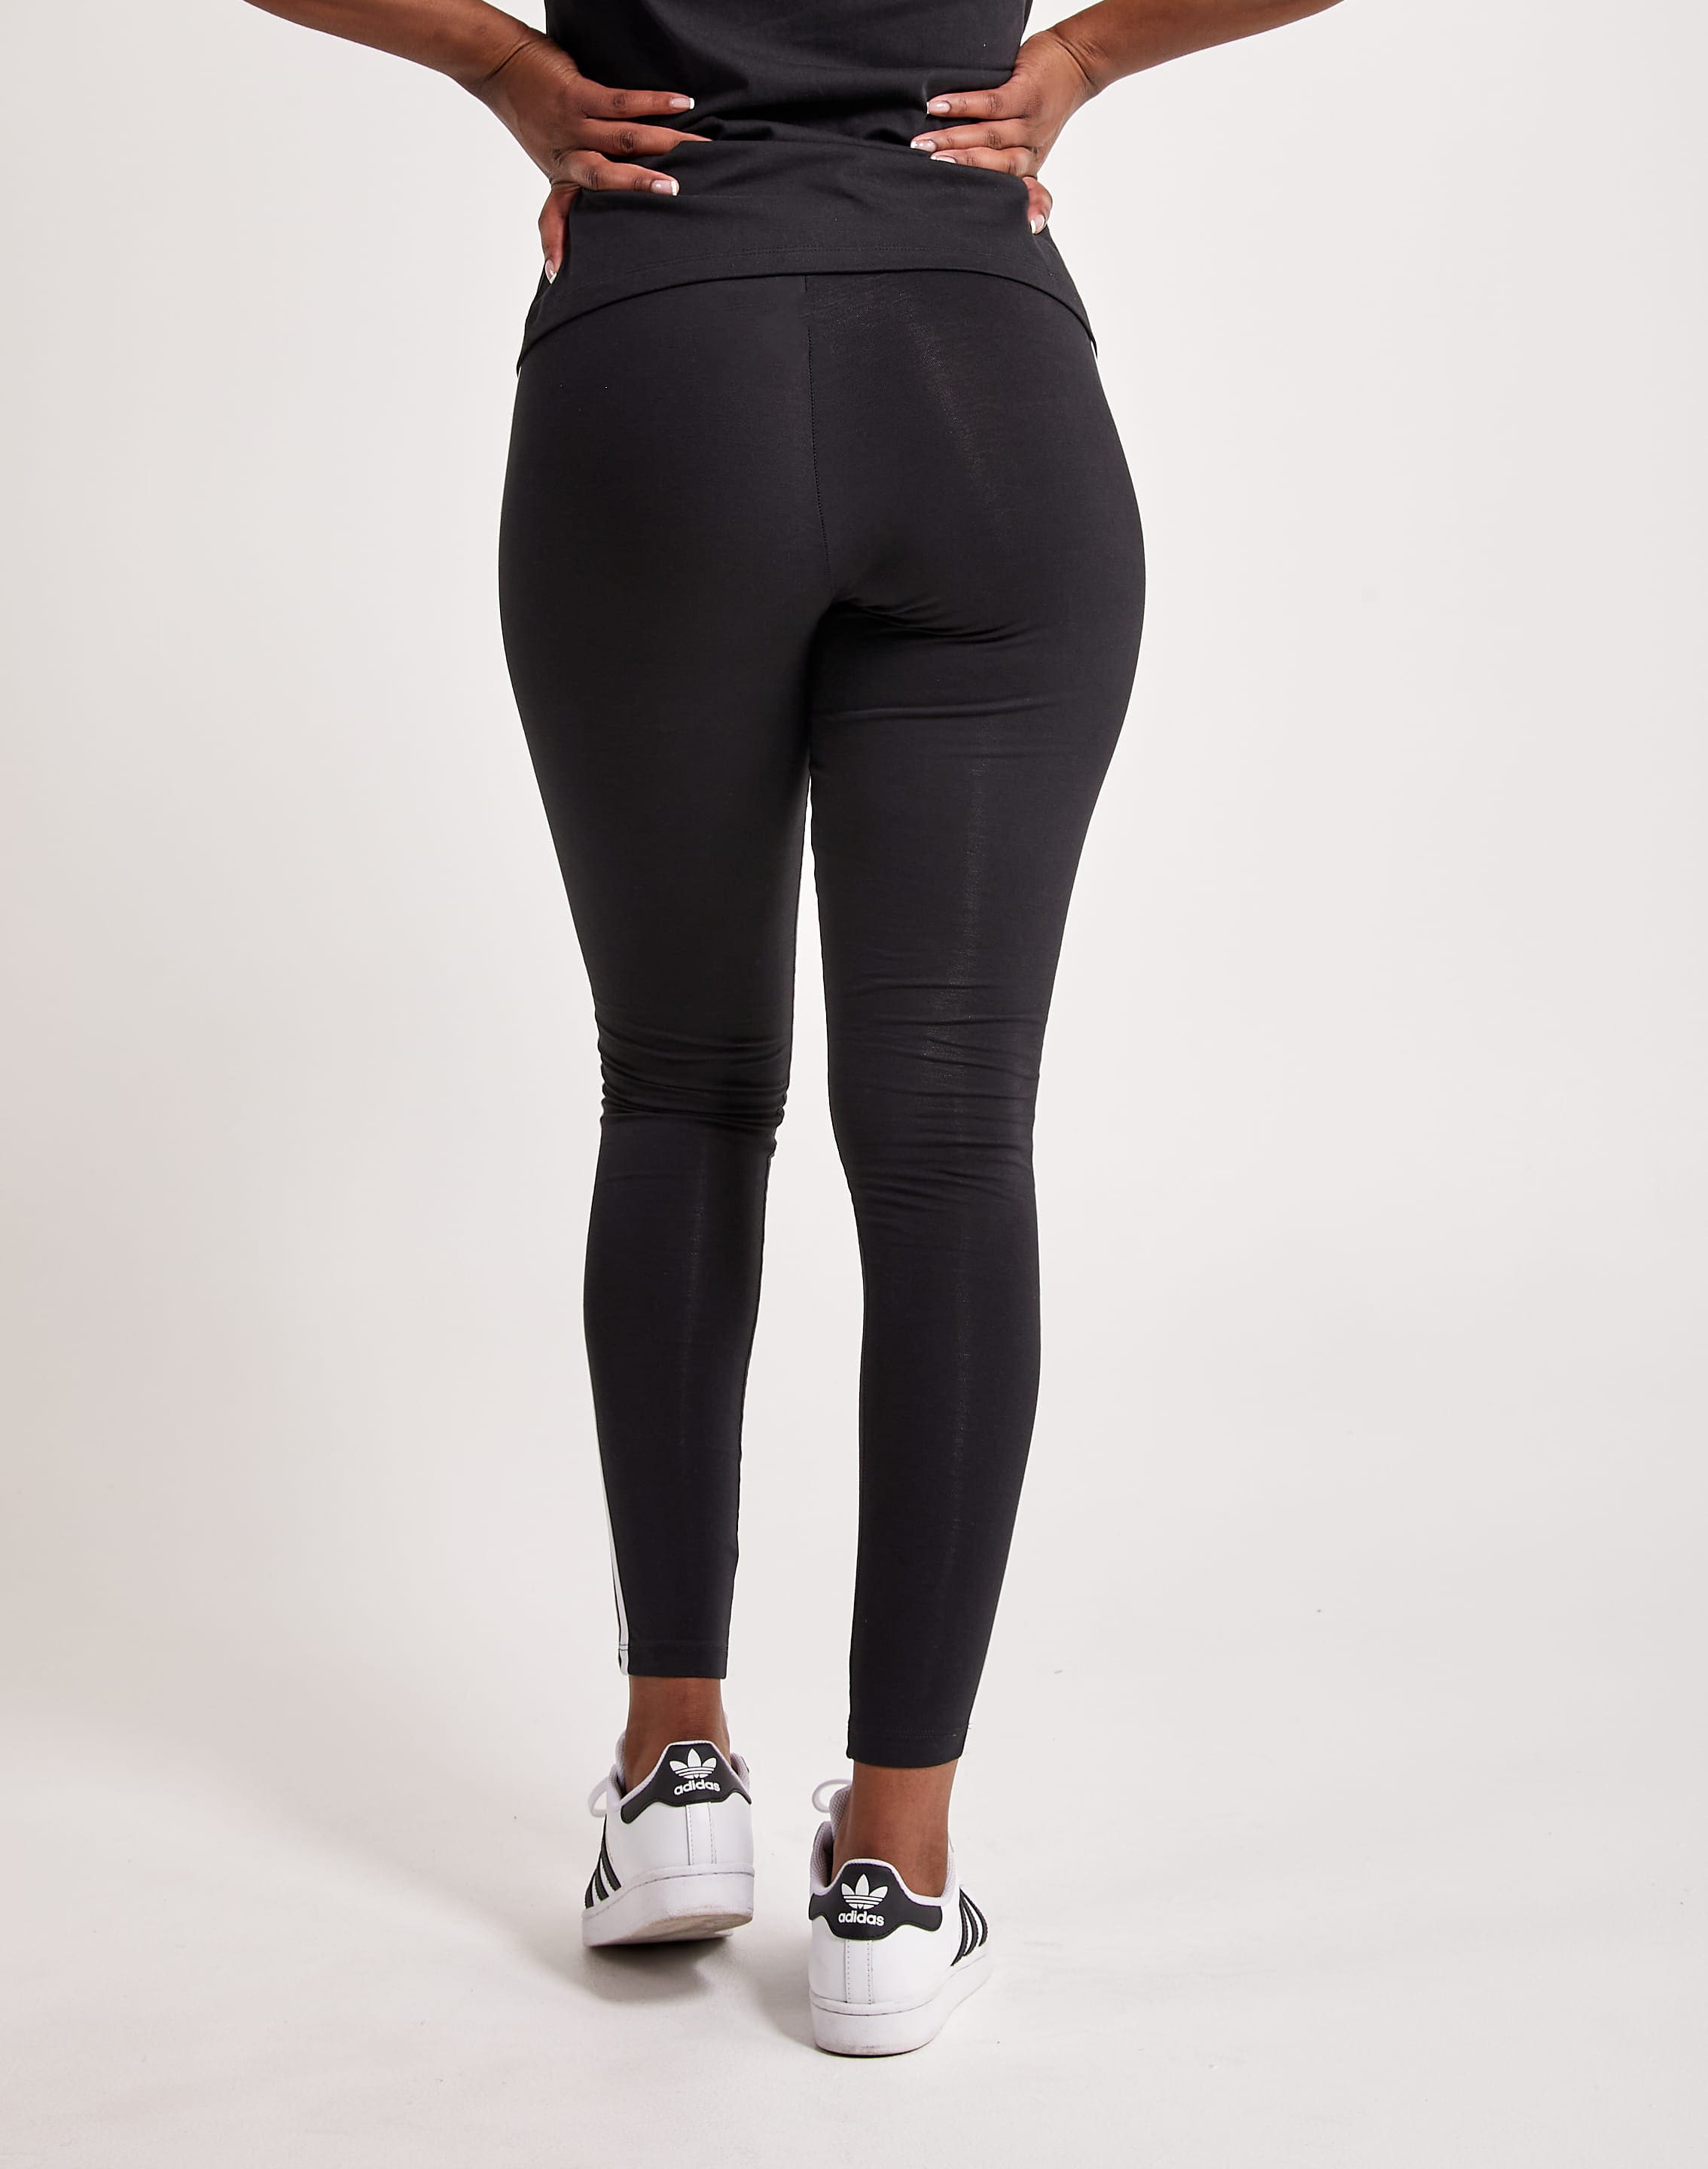 Adidas Trefoil Logo High Waisted Leggings Womens Size S Black White